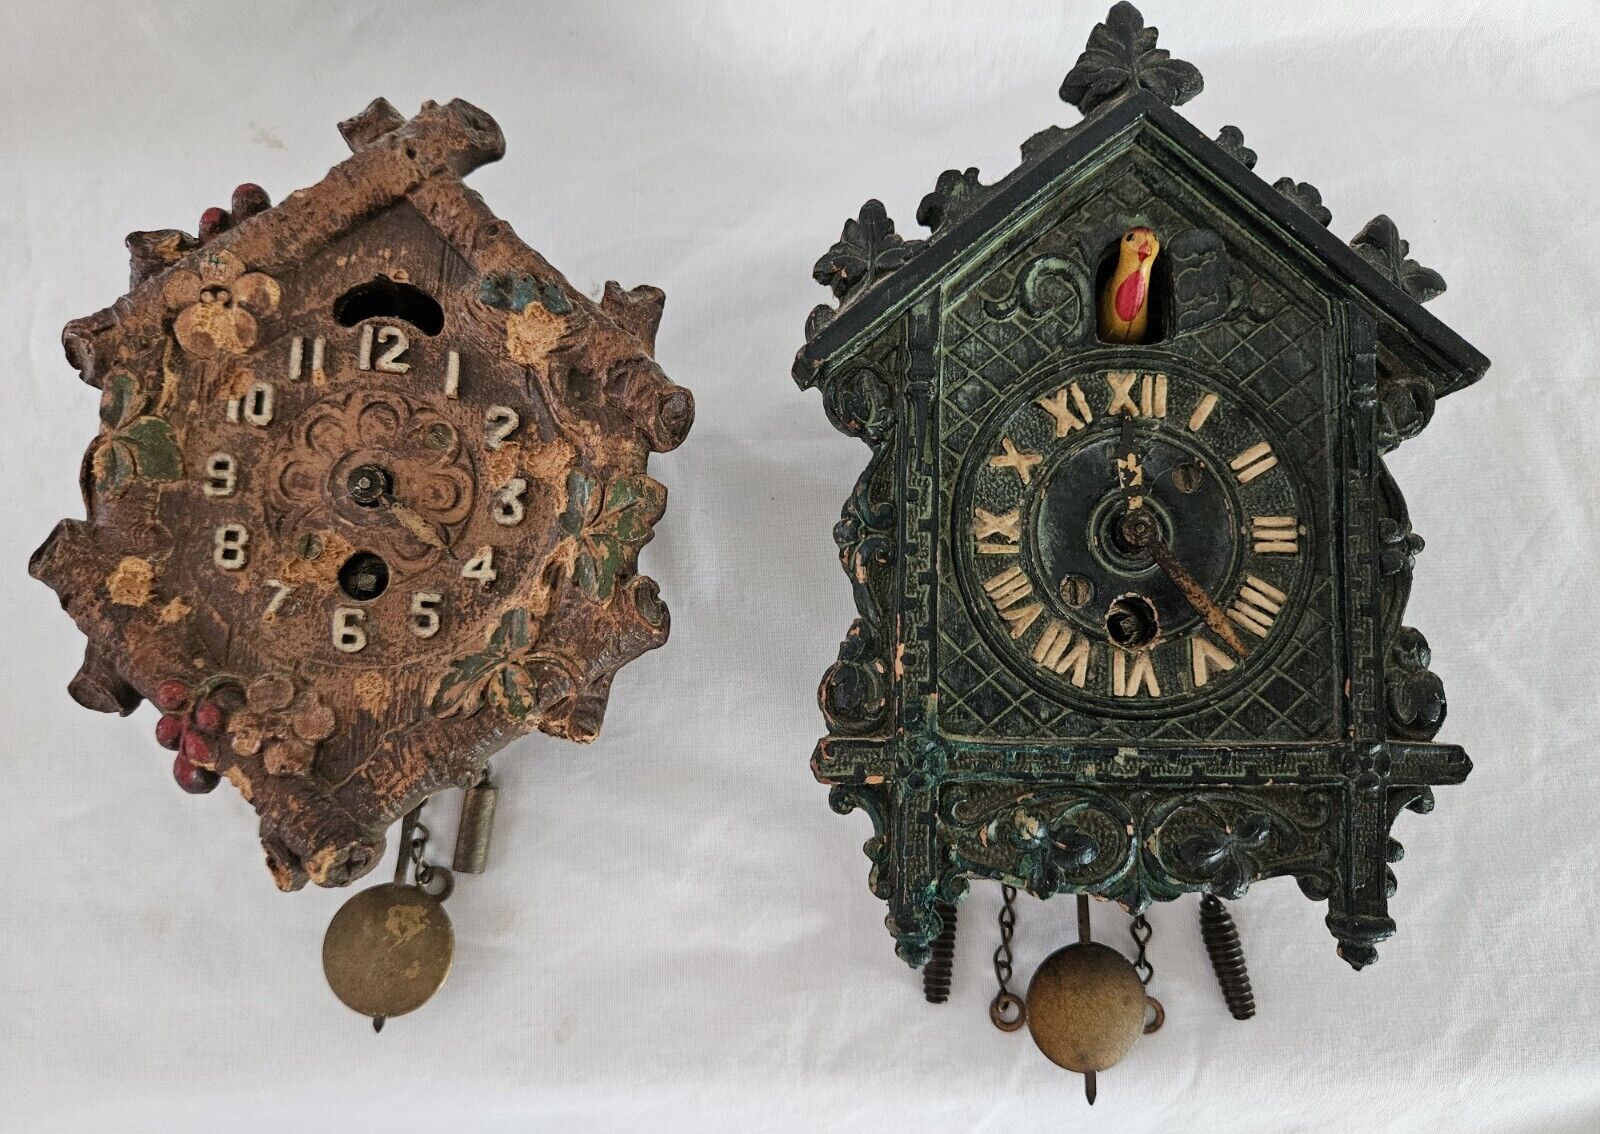 2 Vintage Miniture Cuckoo Wall Clocks LUX & KEEBLER For Parts Repair Repurpose